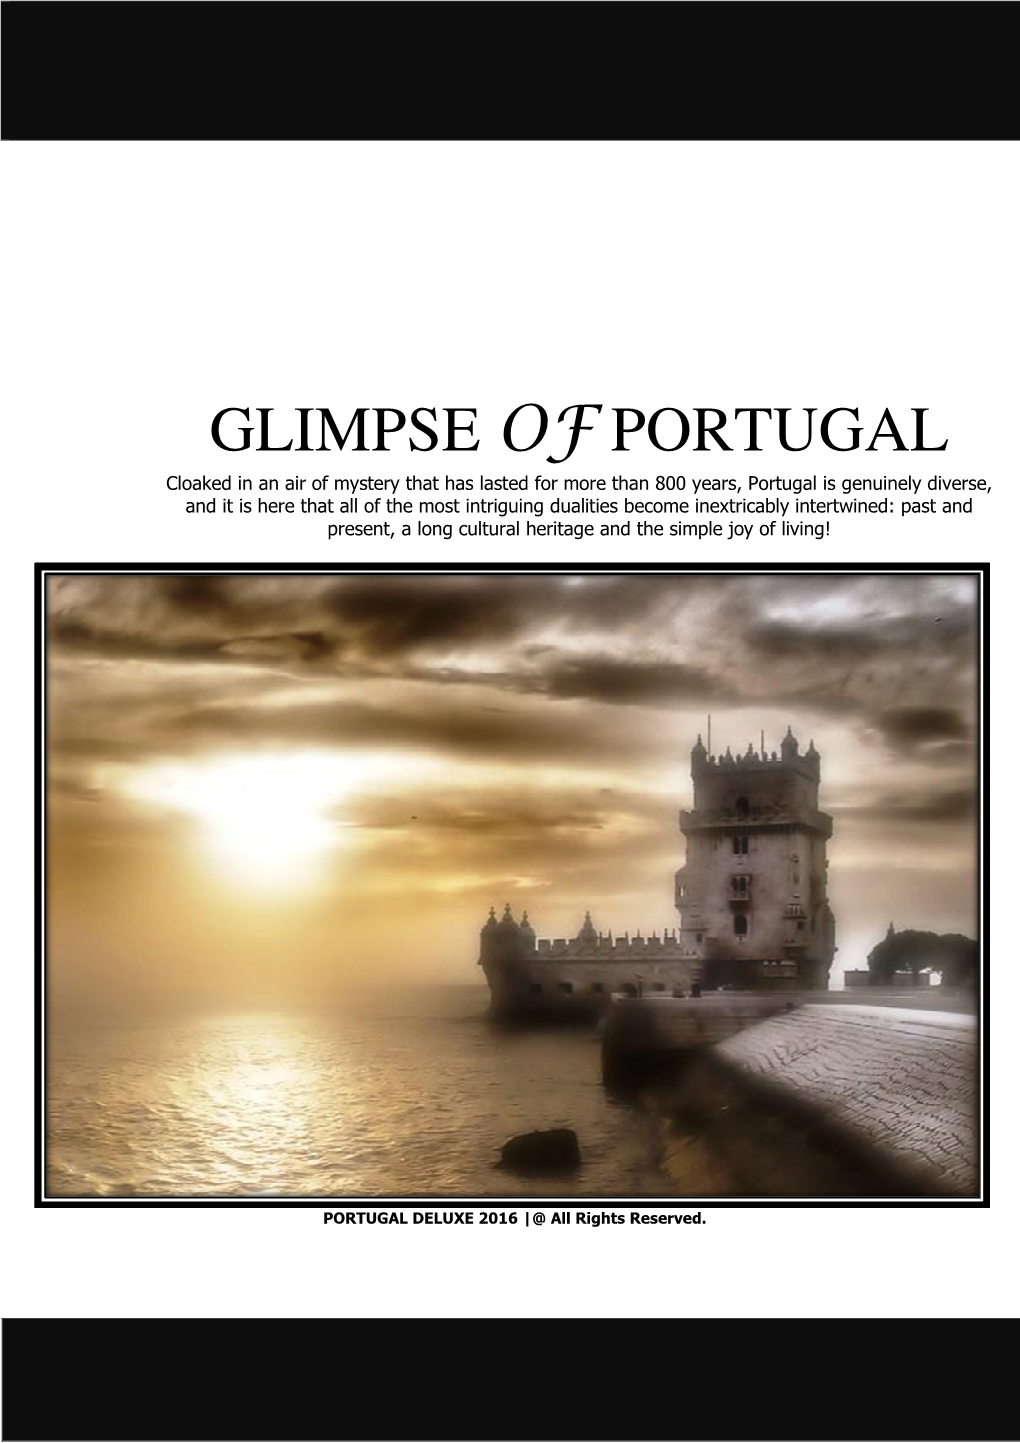 Glimpse of Portugal